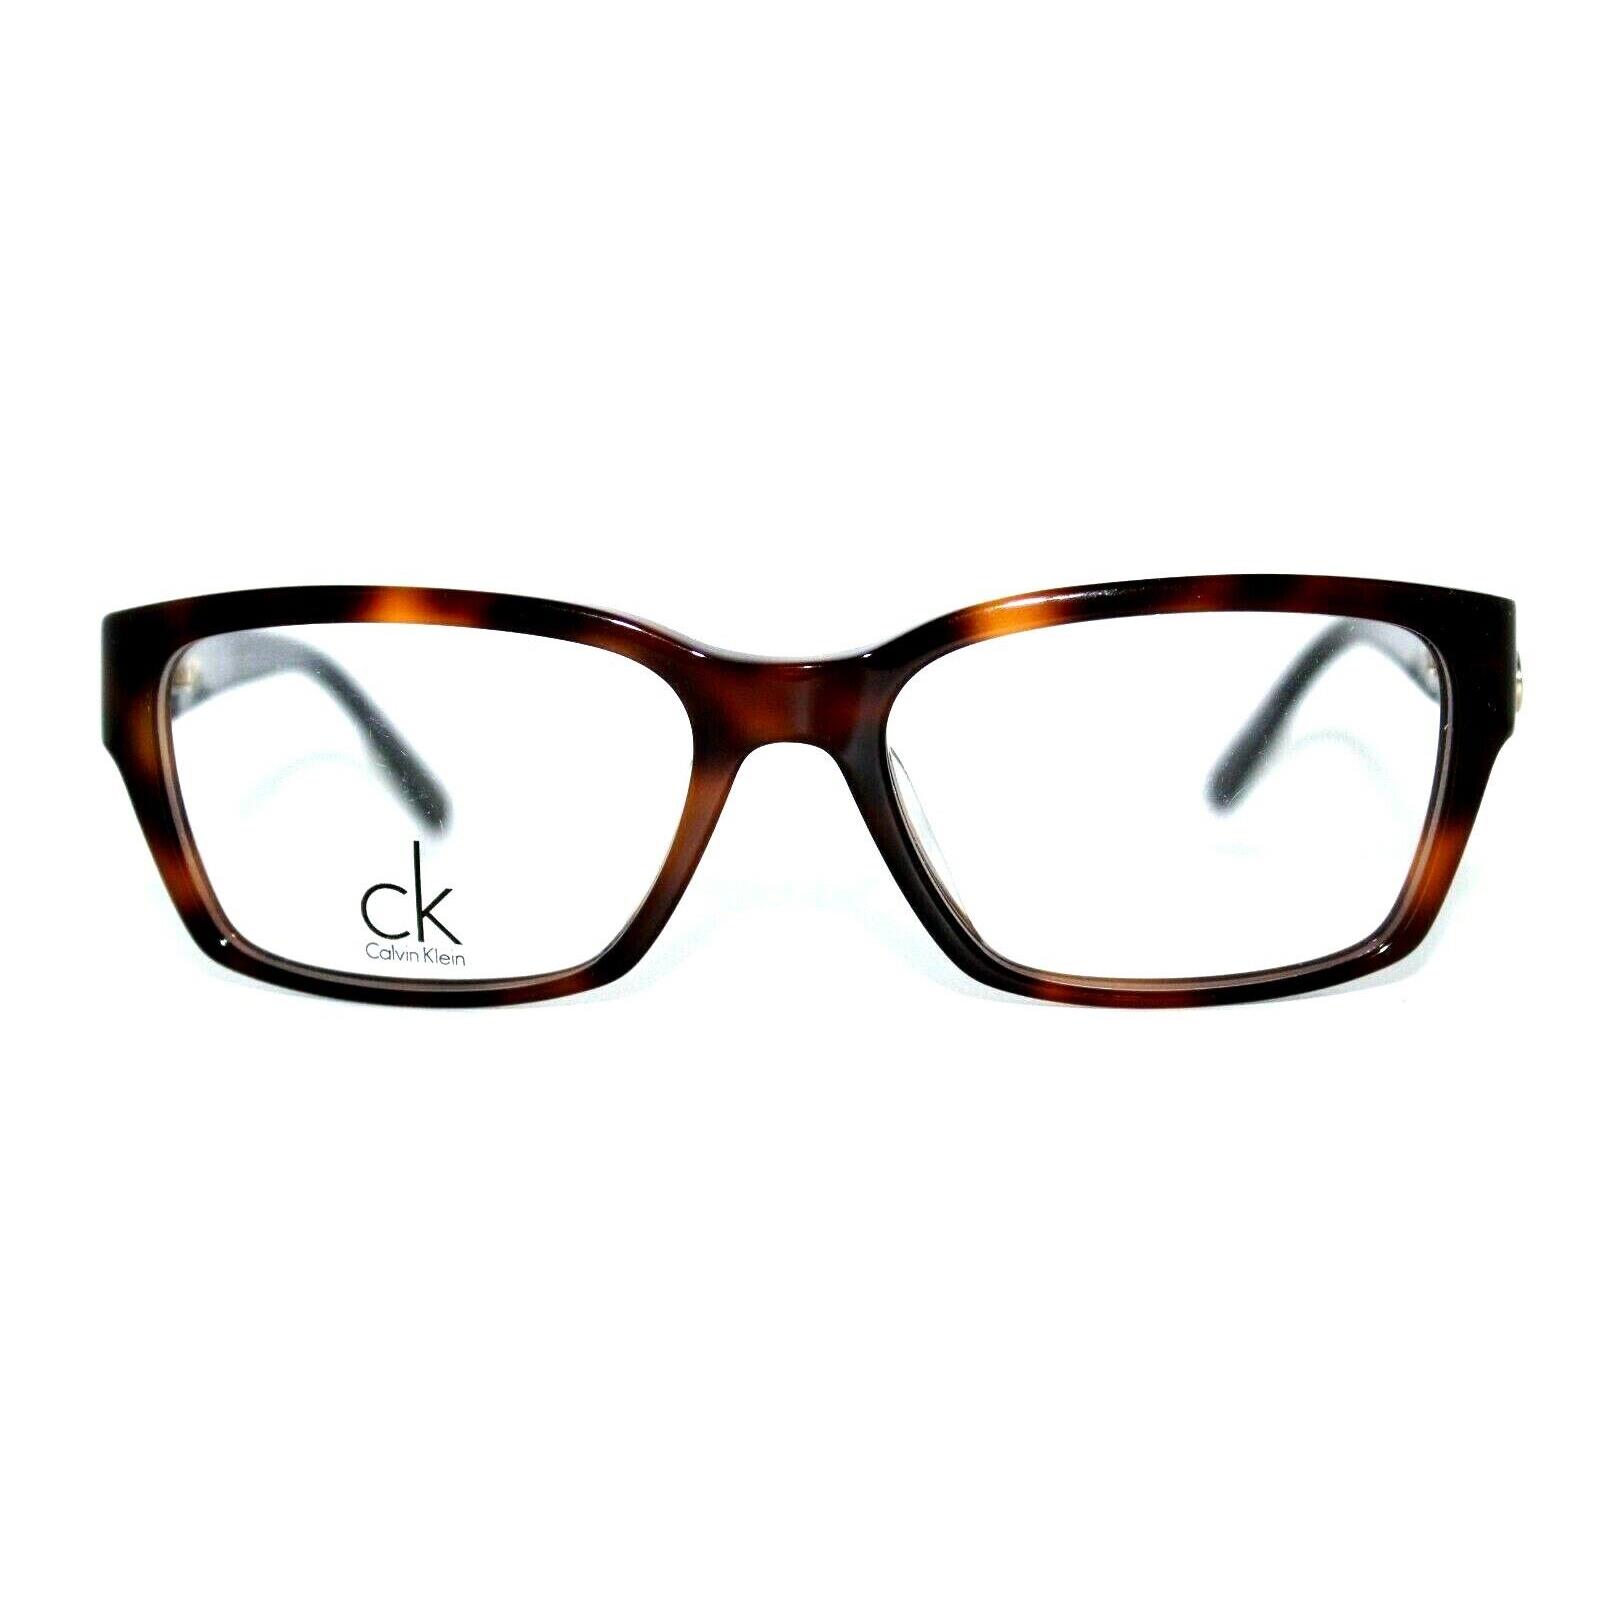 Calvin Klein CK5700 312 Tortoise Eyeglasses Women`s Frames 53MM RX